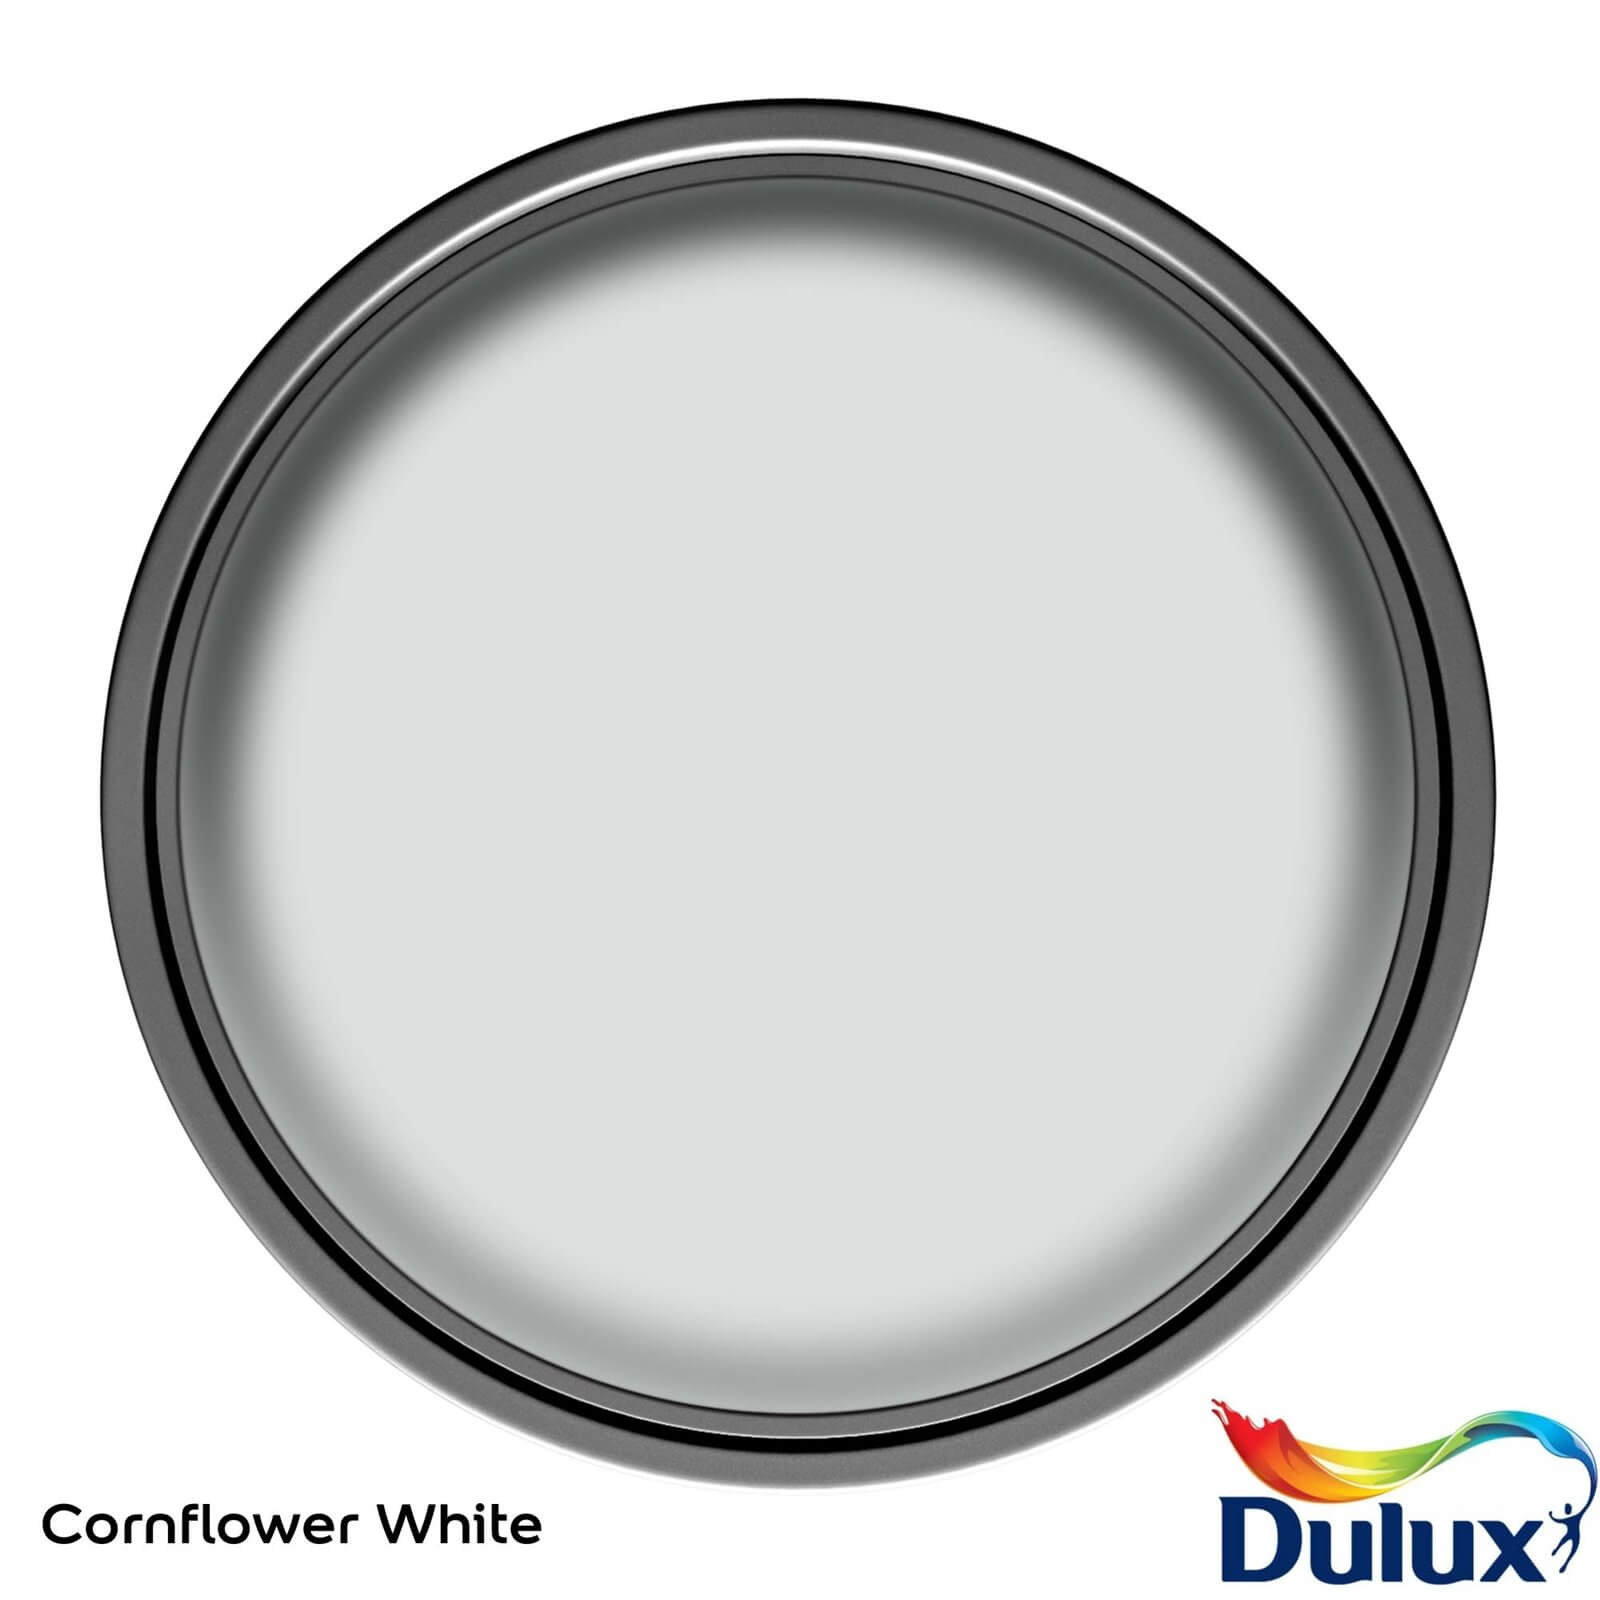 Dulux Easycare Washable & Tough Cornflower White Matt Paint - 5L